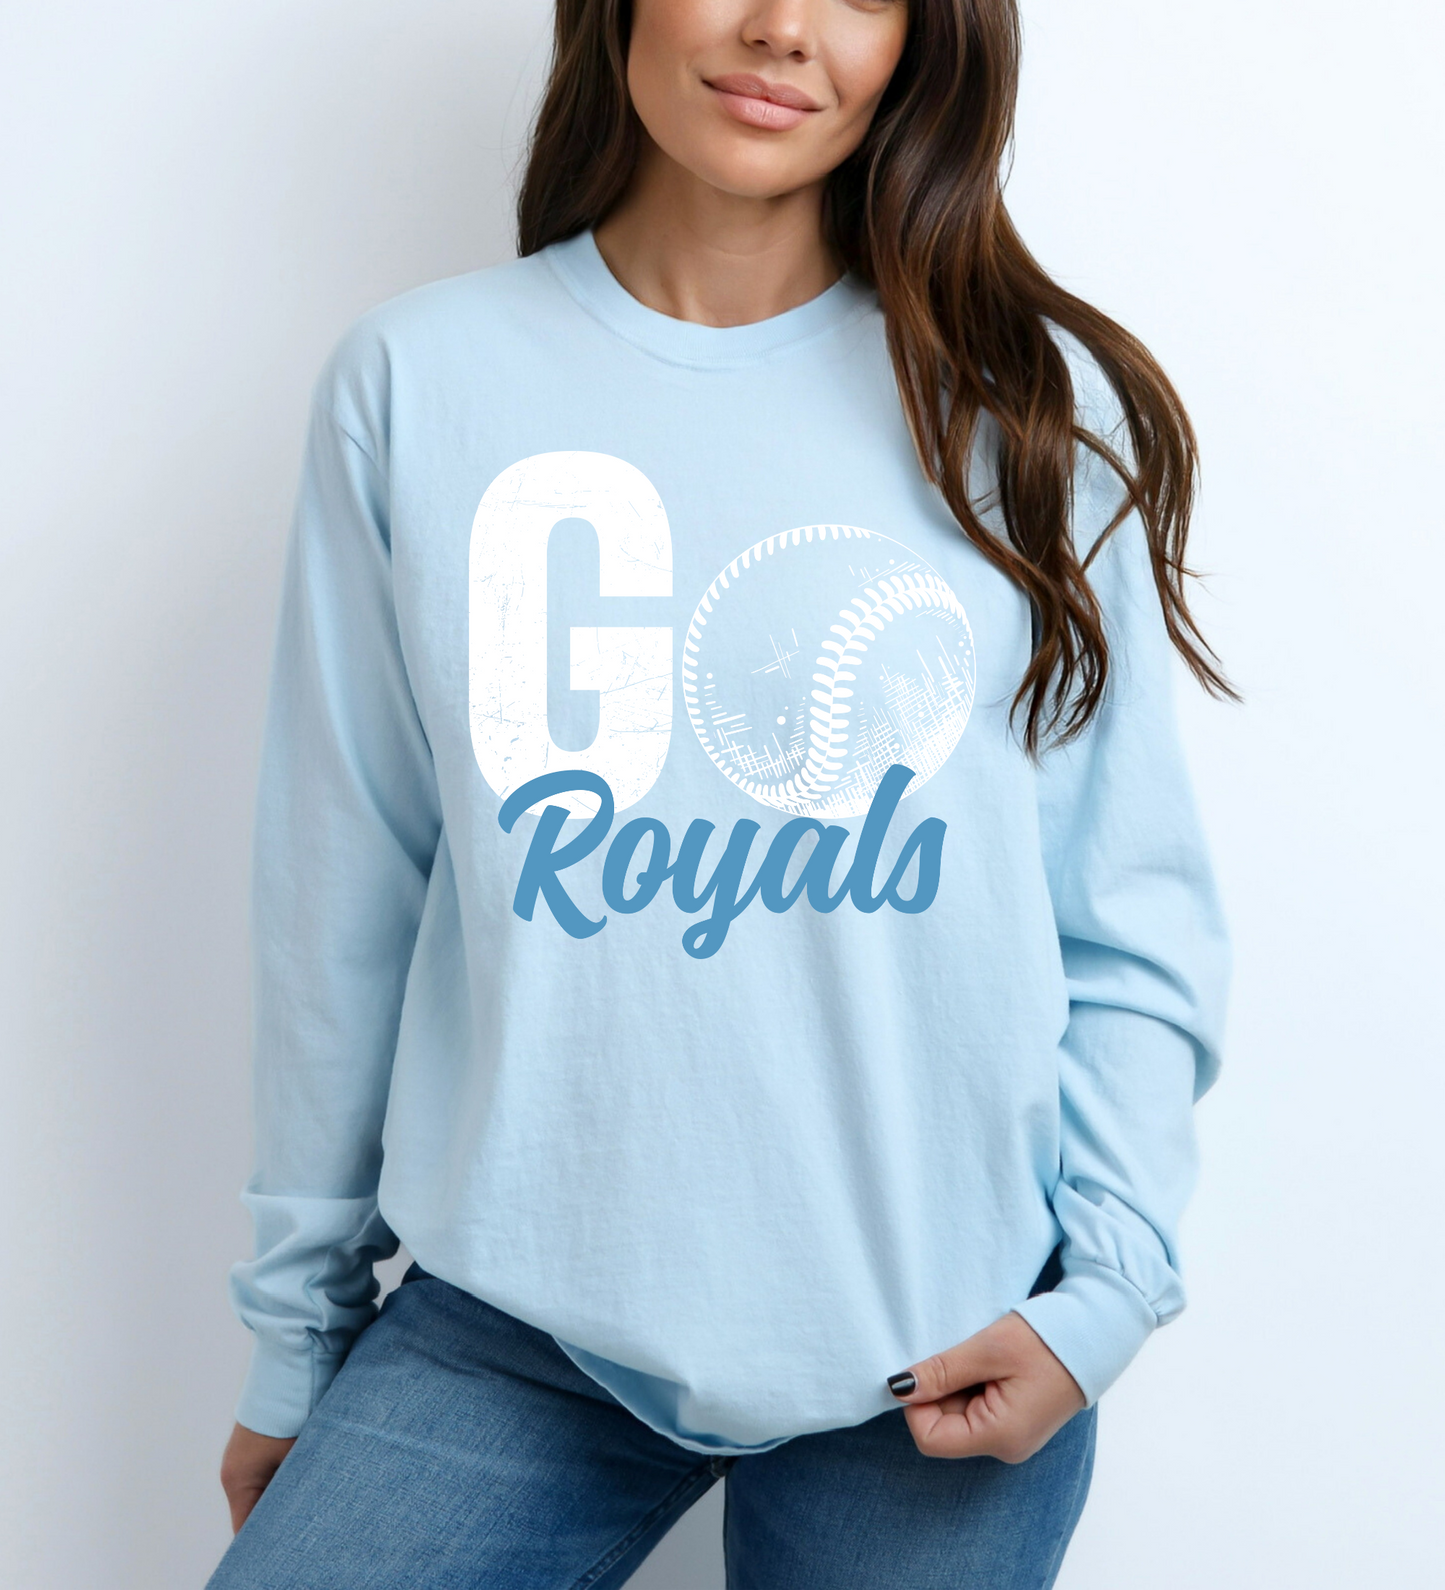 GO Royals (Comfort Colors)